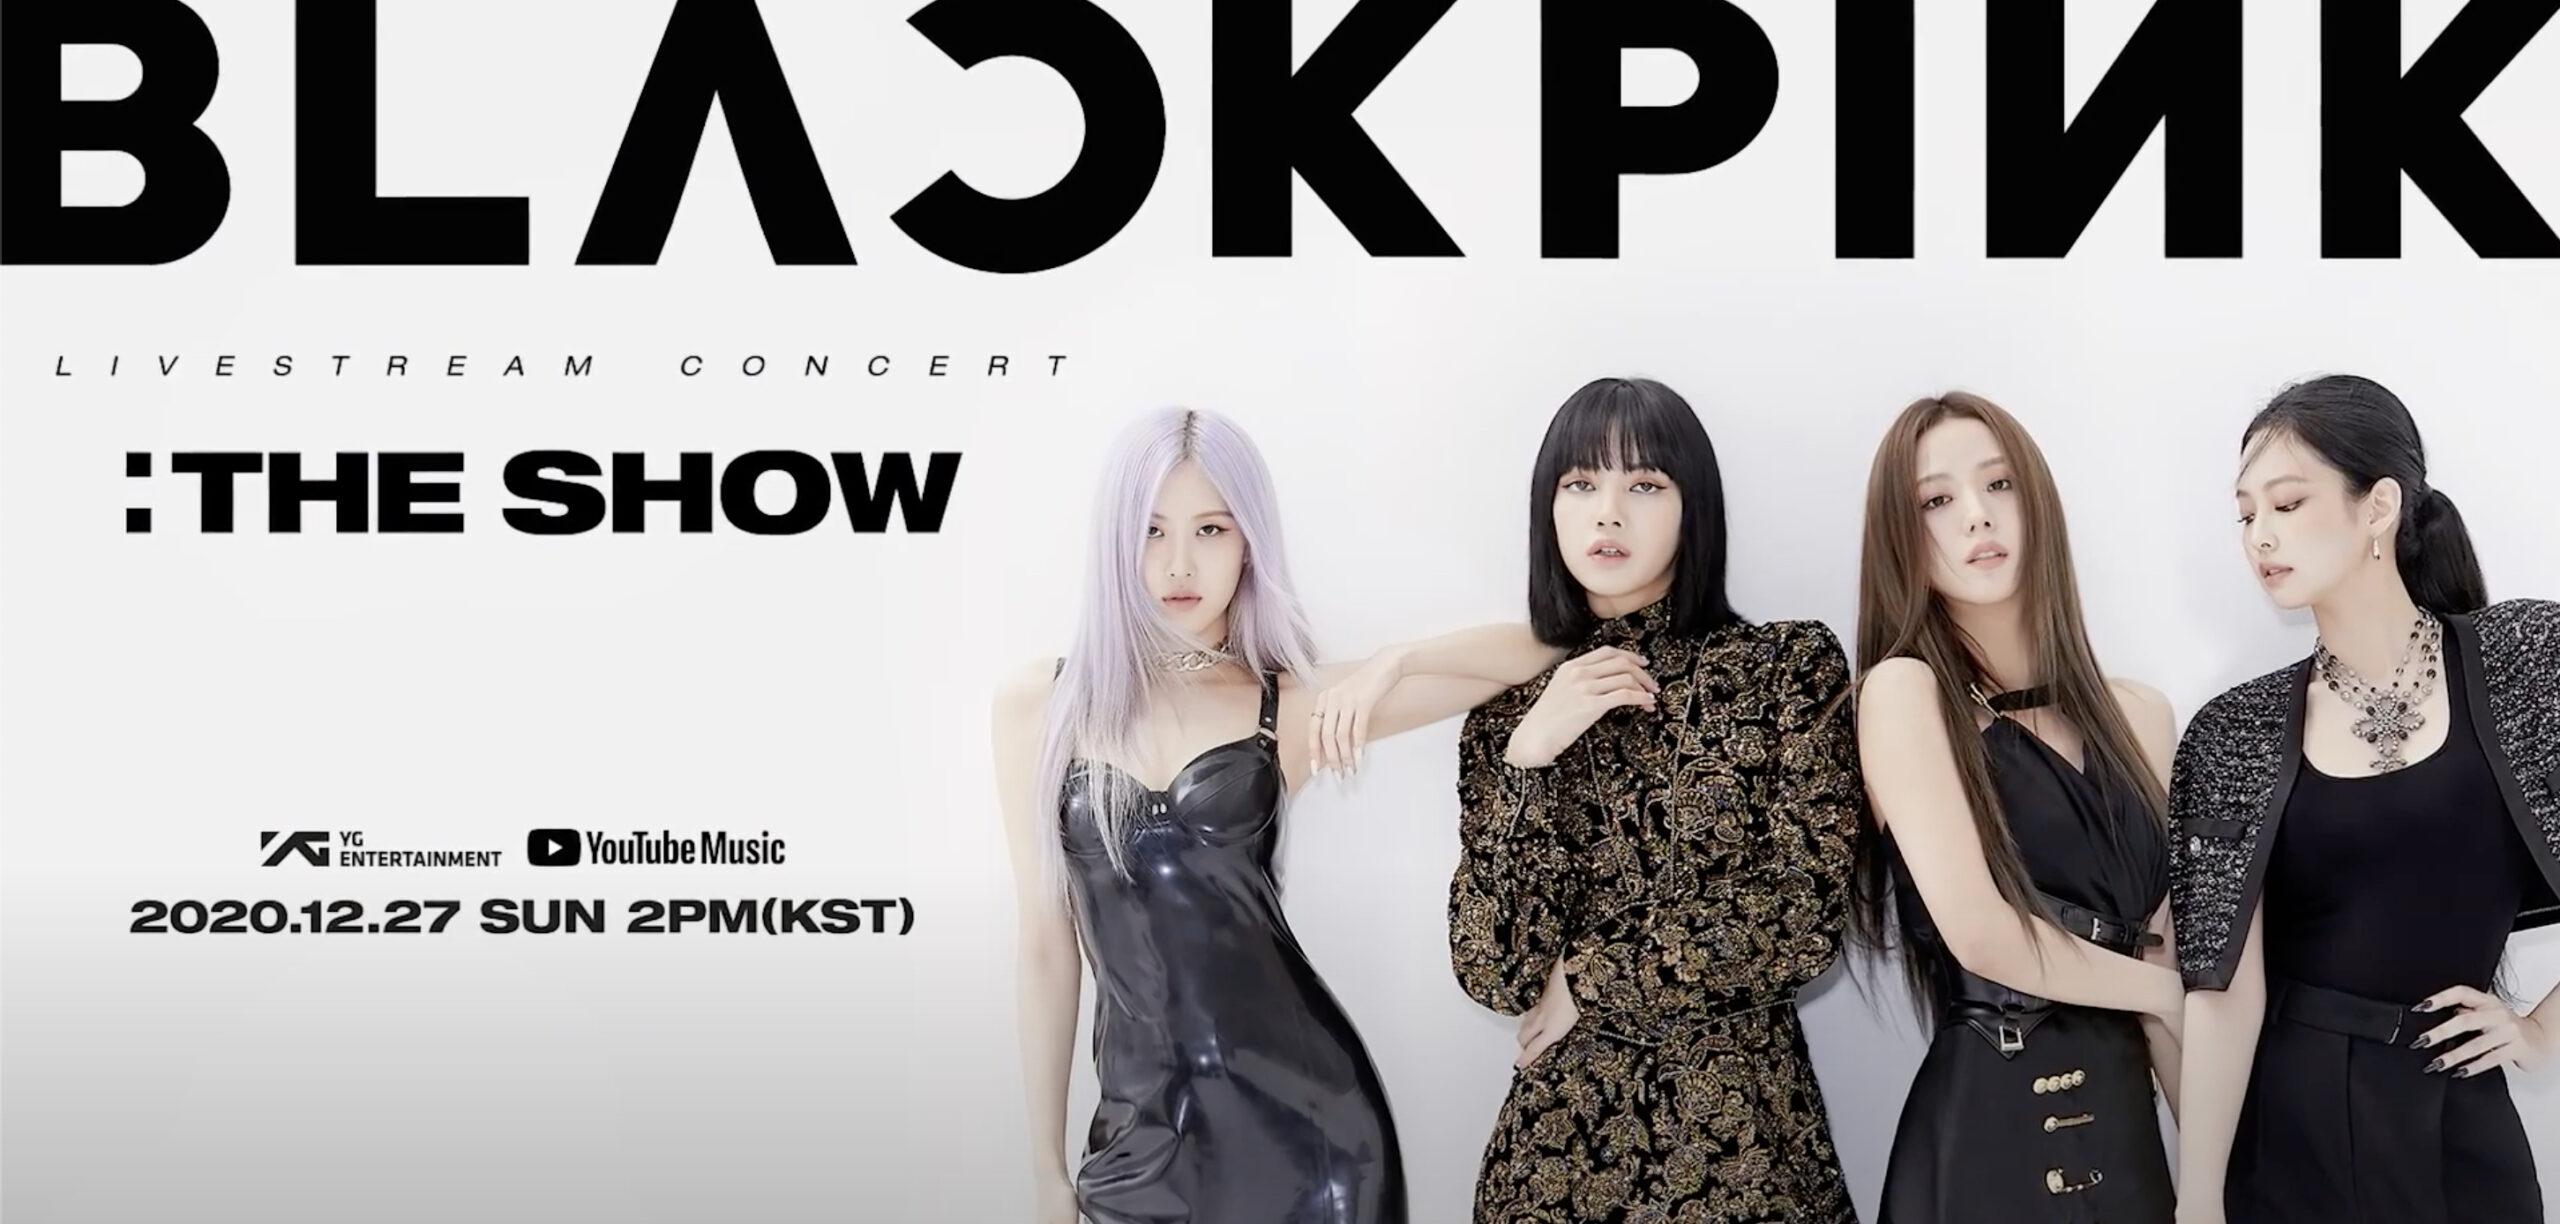 BLACKPINK “The Show” Online Konser (Tarih, Bilet Fiyatları, Bilet Nasıl Alınır Gösterimi)